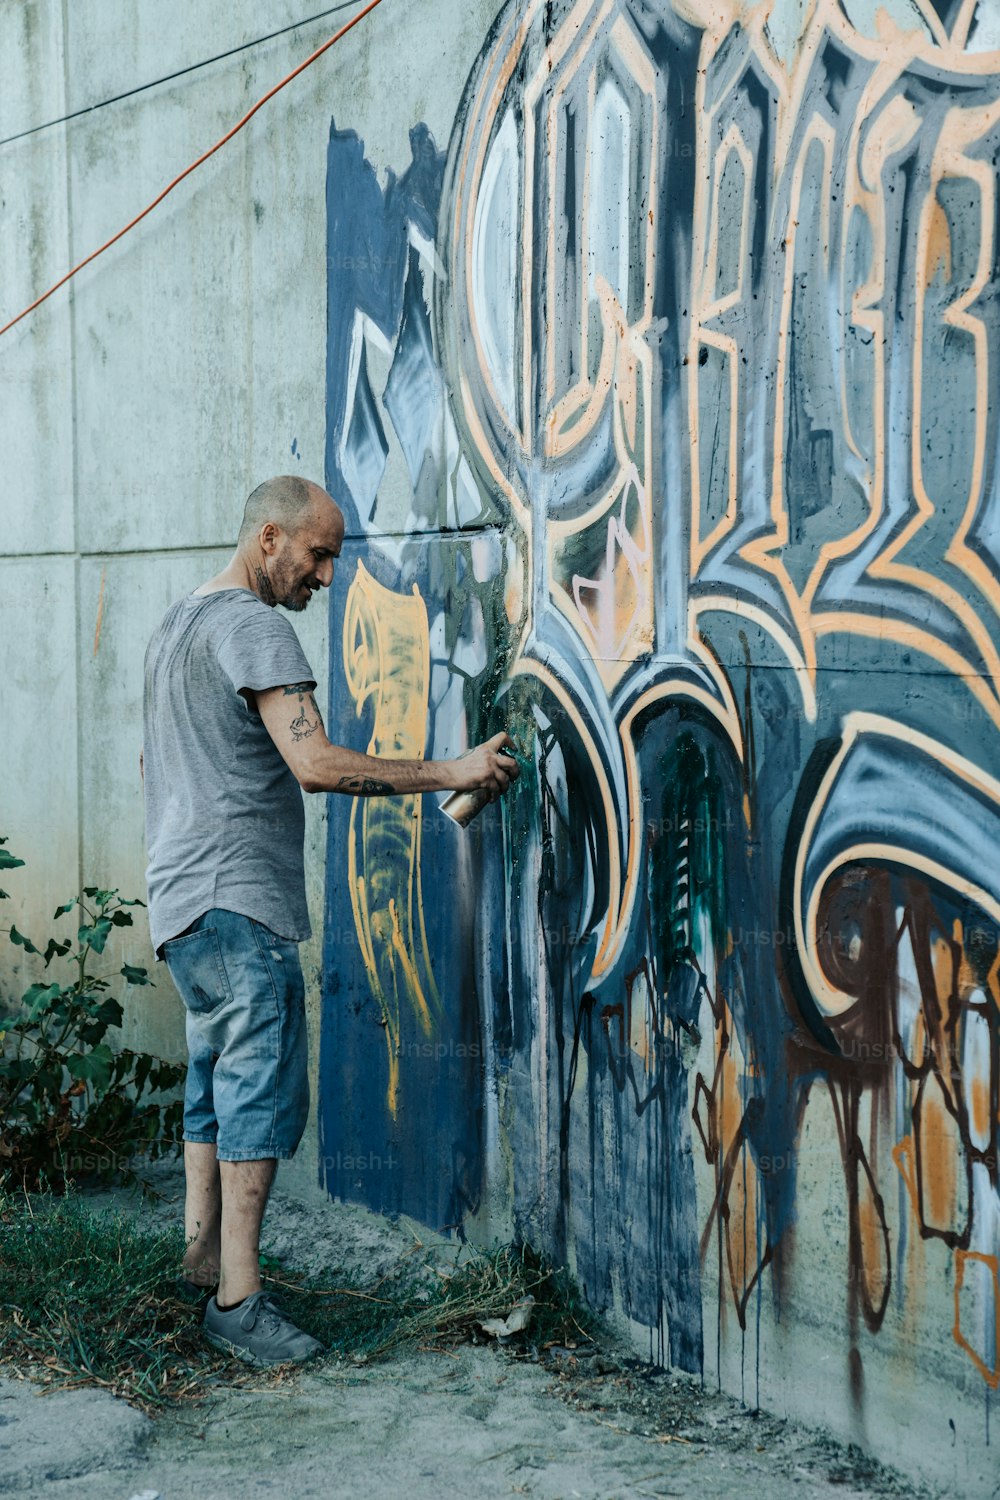 Ein Mann, der eine Wand mit Graffiti bemalt